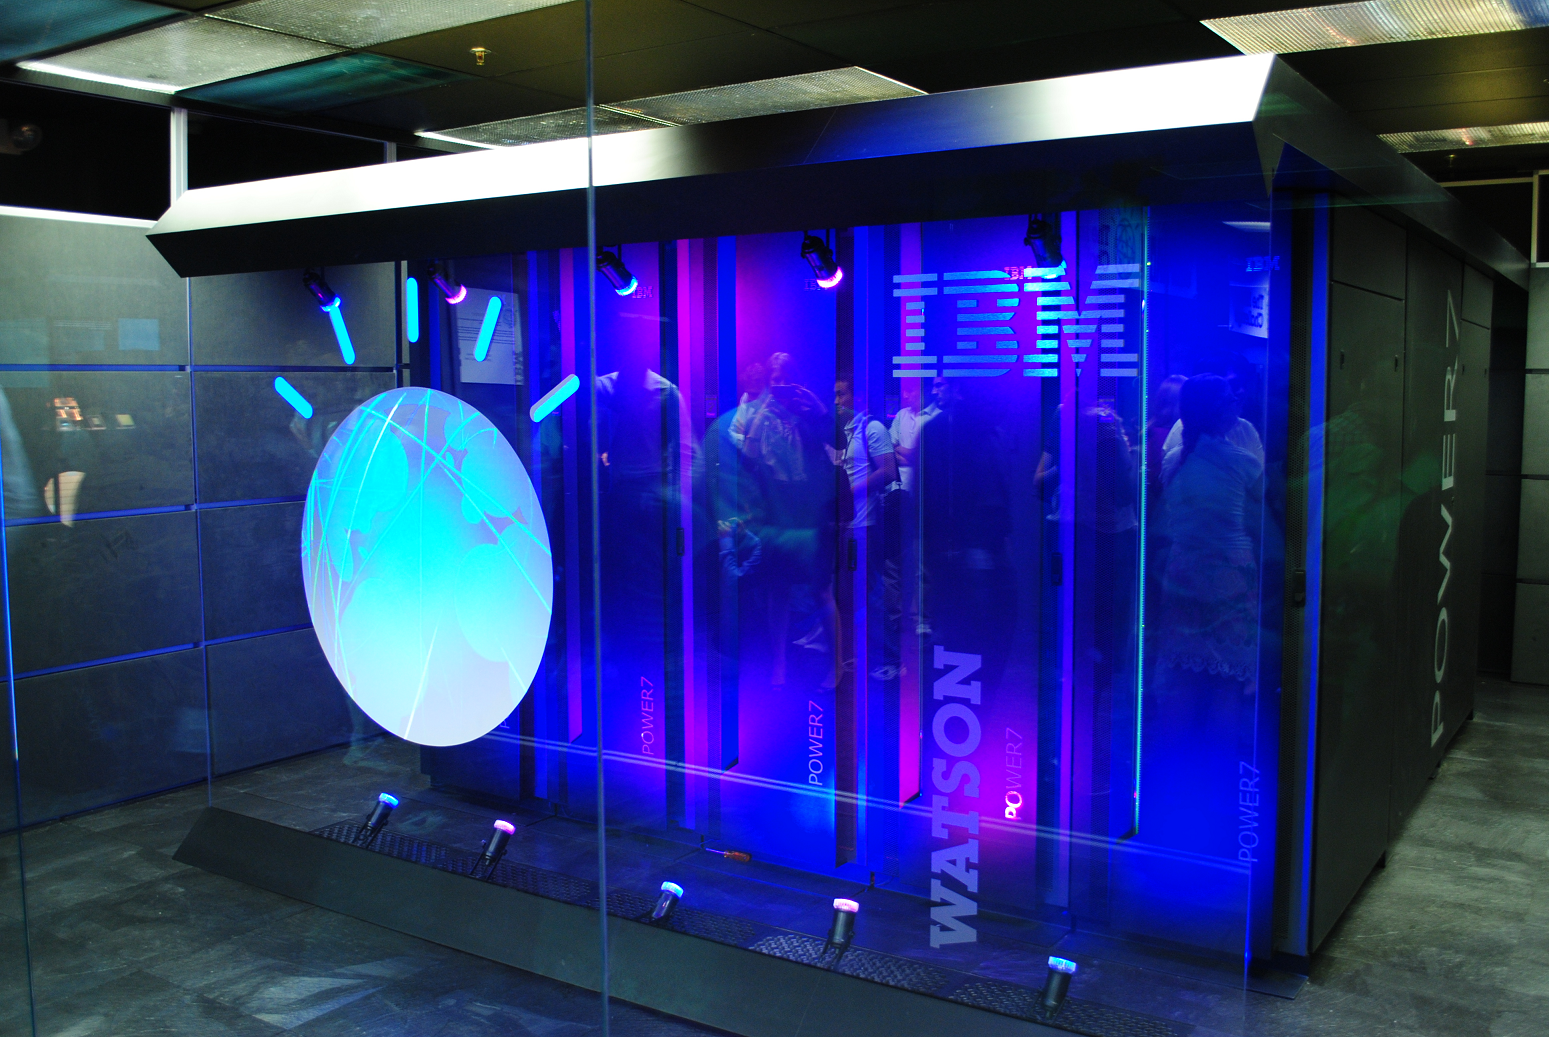 IBM invertirá $240 millones de dólares para crear el MIT-IBM Watson AI Lab, un proyecto colaborativo a 10 años con el MIT con el objetivo de impulsar logros científicos en el campo de la inteligencia artificial.  - Foto: Clockready / Wikimedia Commons.